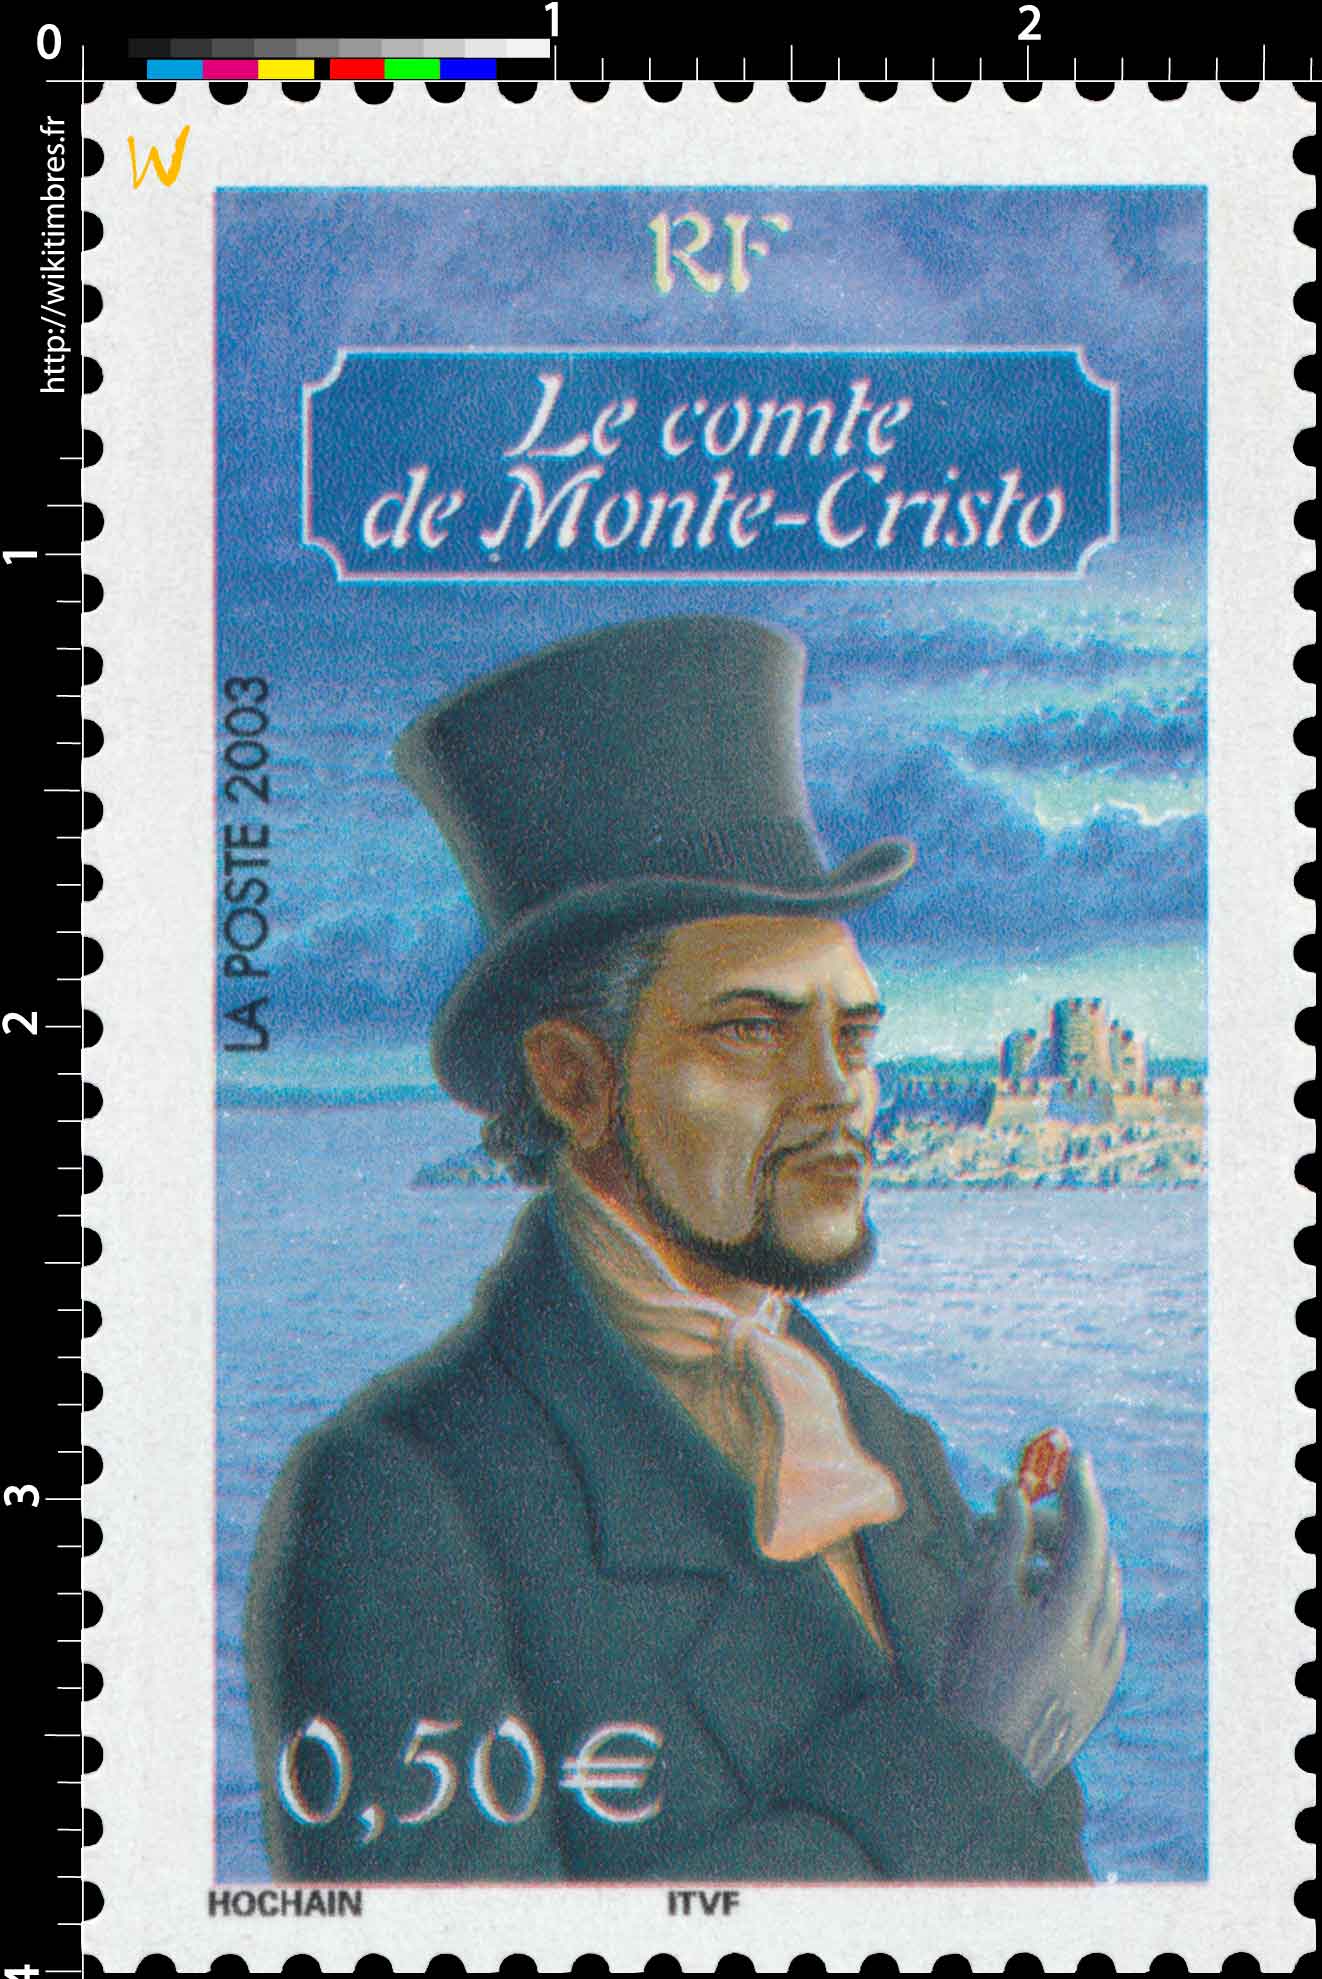 2003 Le comte de Monte-Cristo